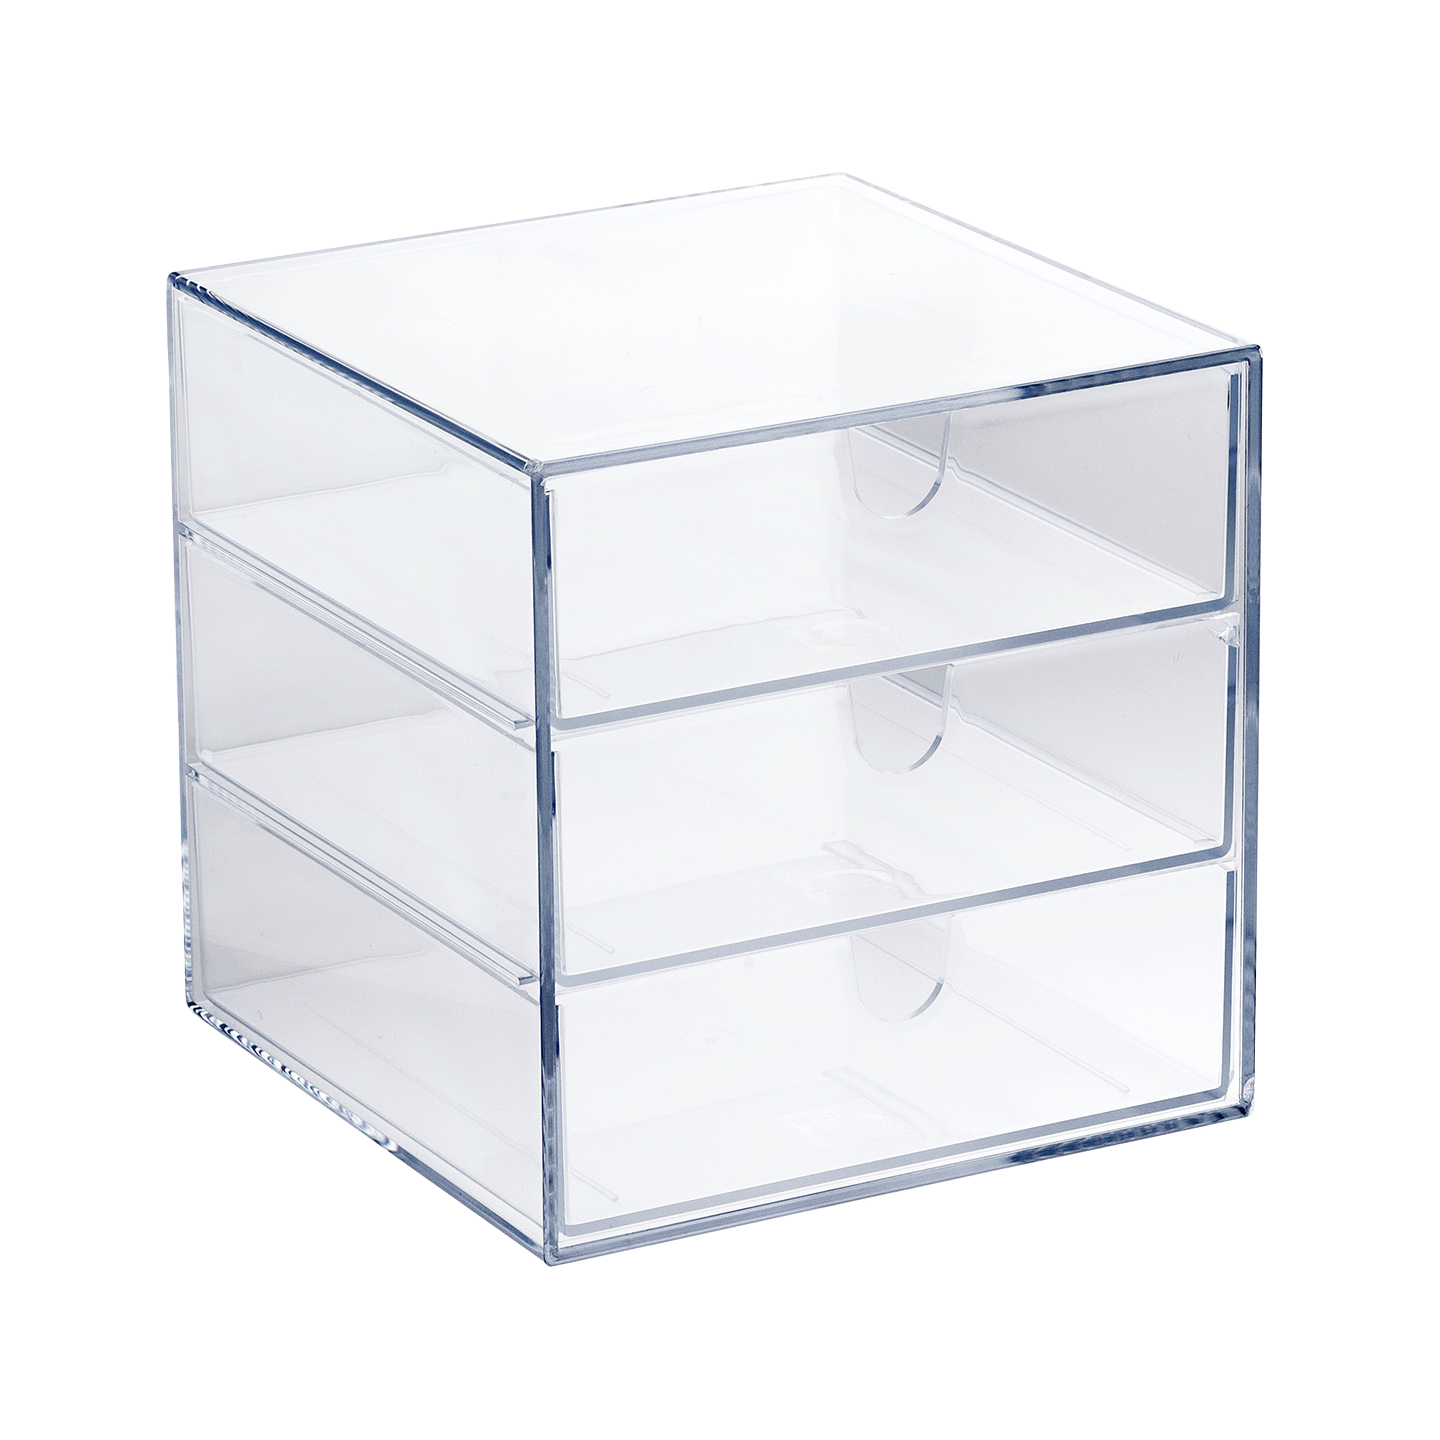 12296 Palaset PALASET Box with 3 drawers